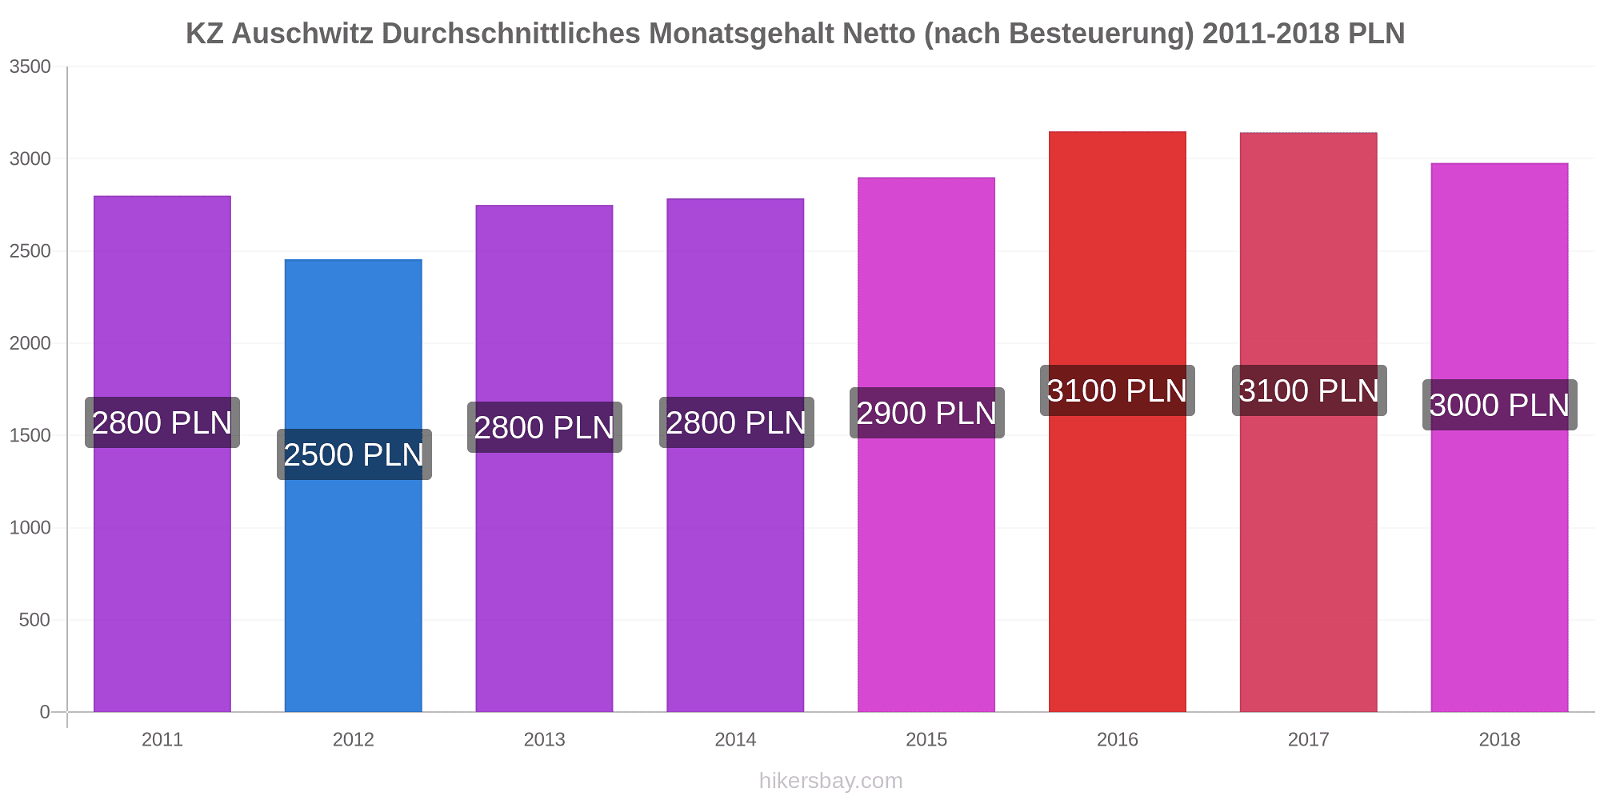 KZ Auschwitz Preisänderungen Durchschnittliches Monatsgehalt Netto (nach Besteuerung) hikersbay.com